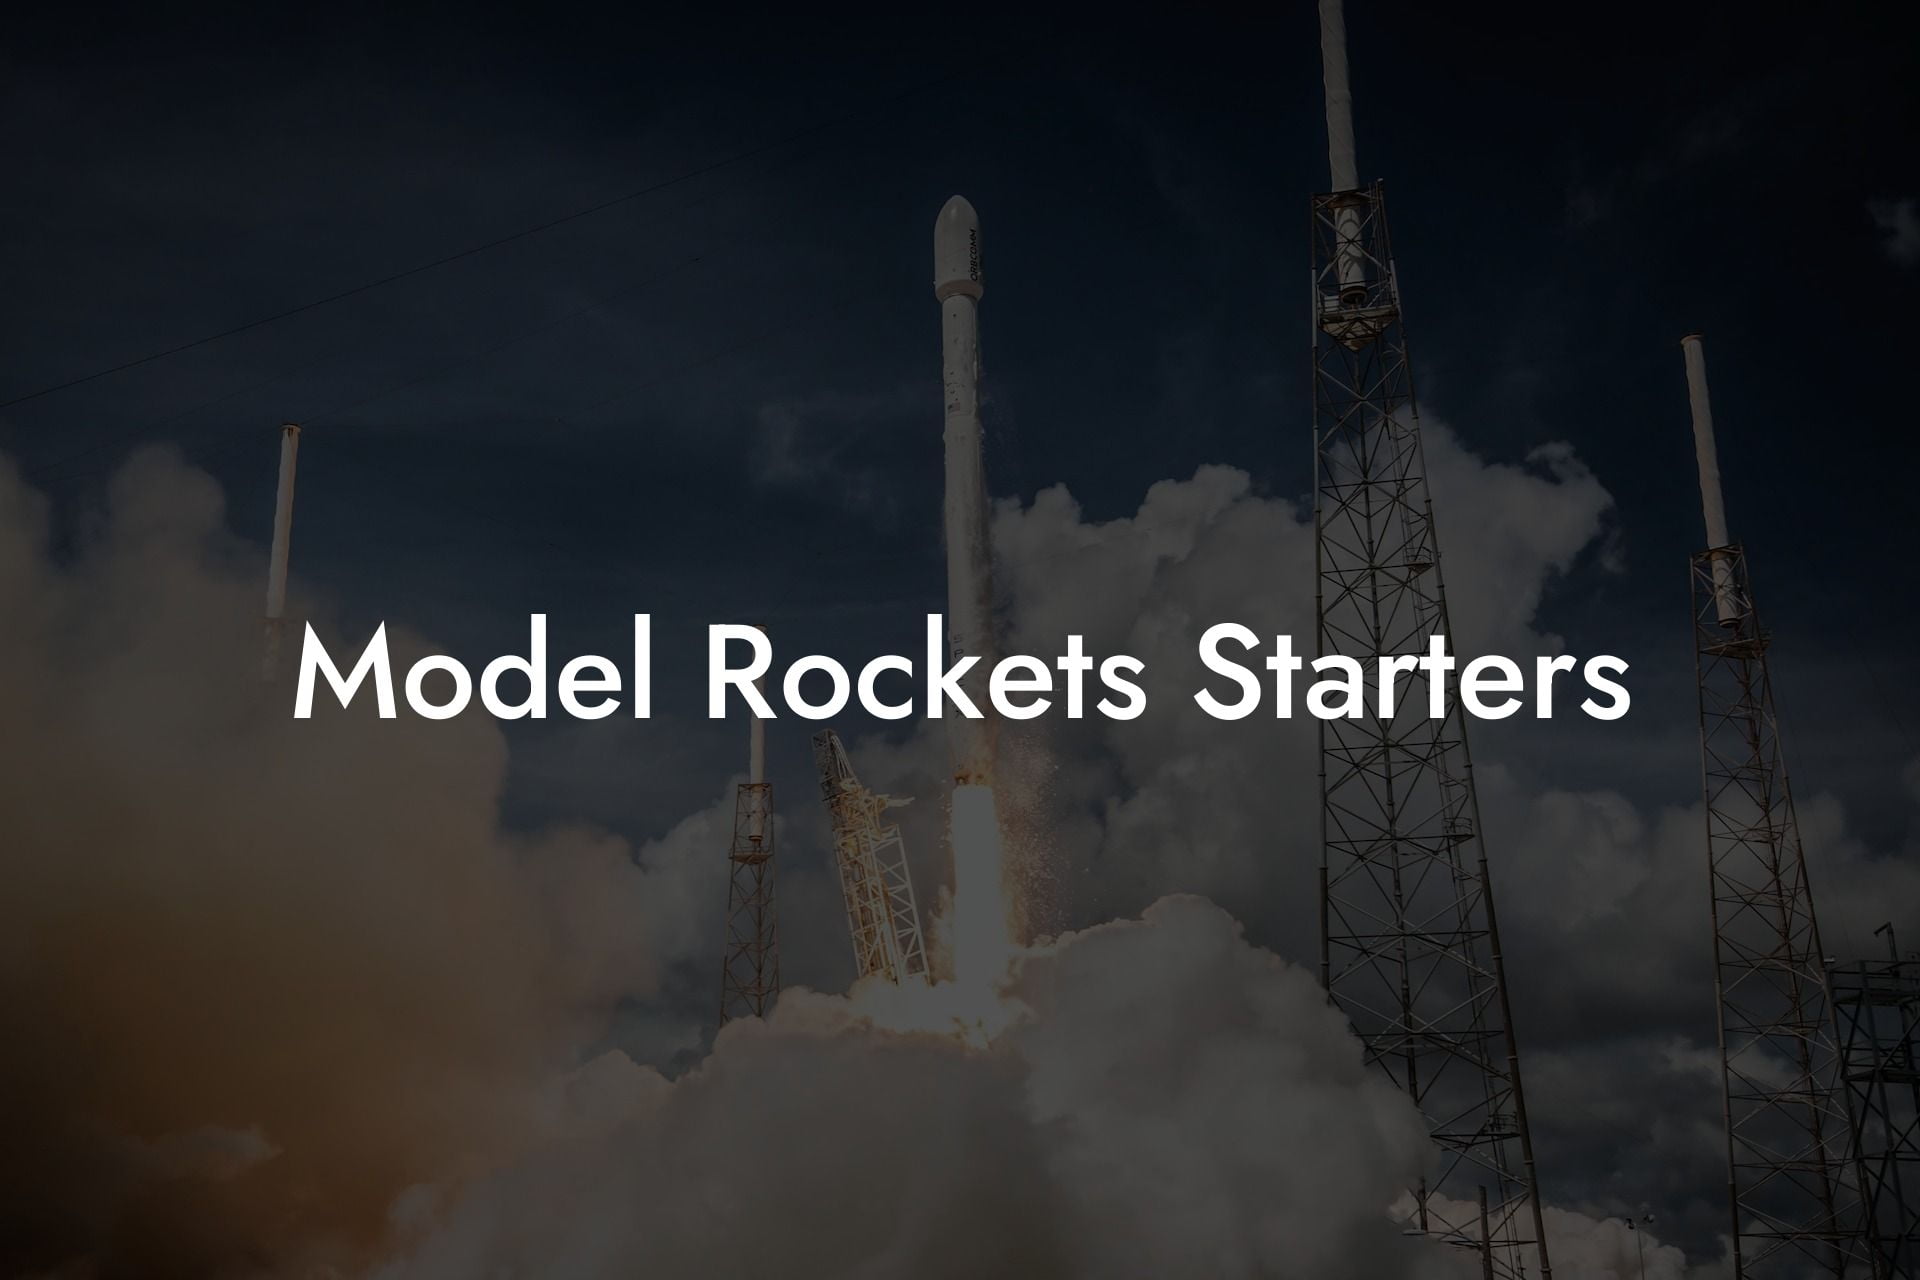 Model Rockets Starters